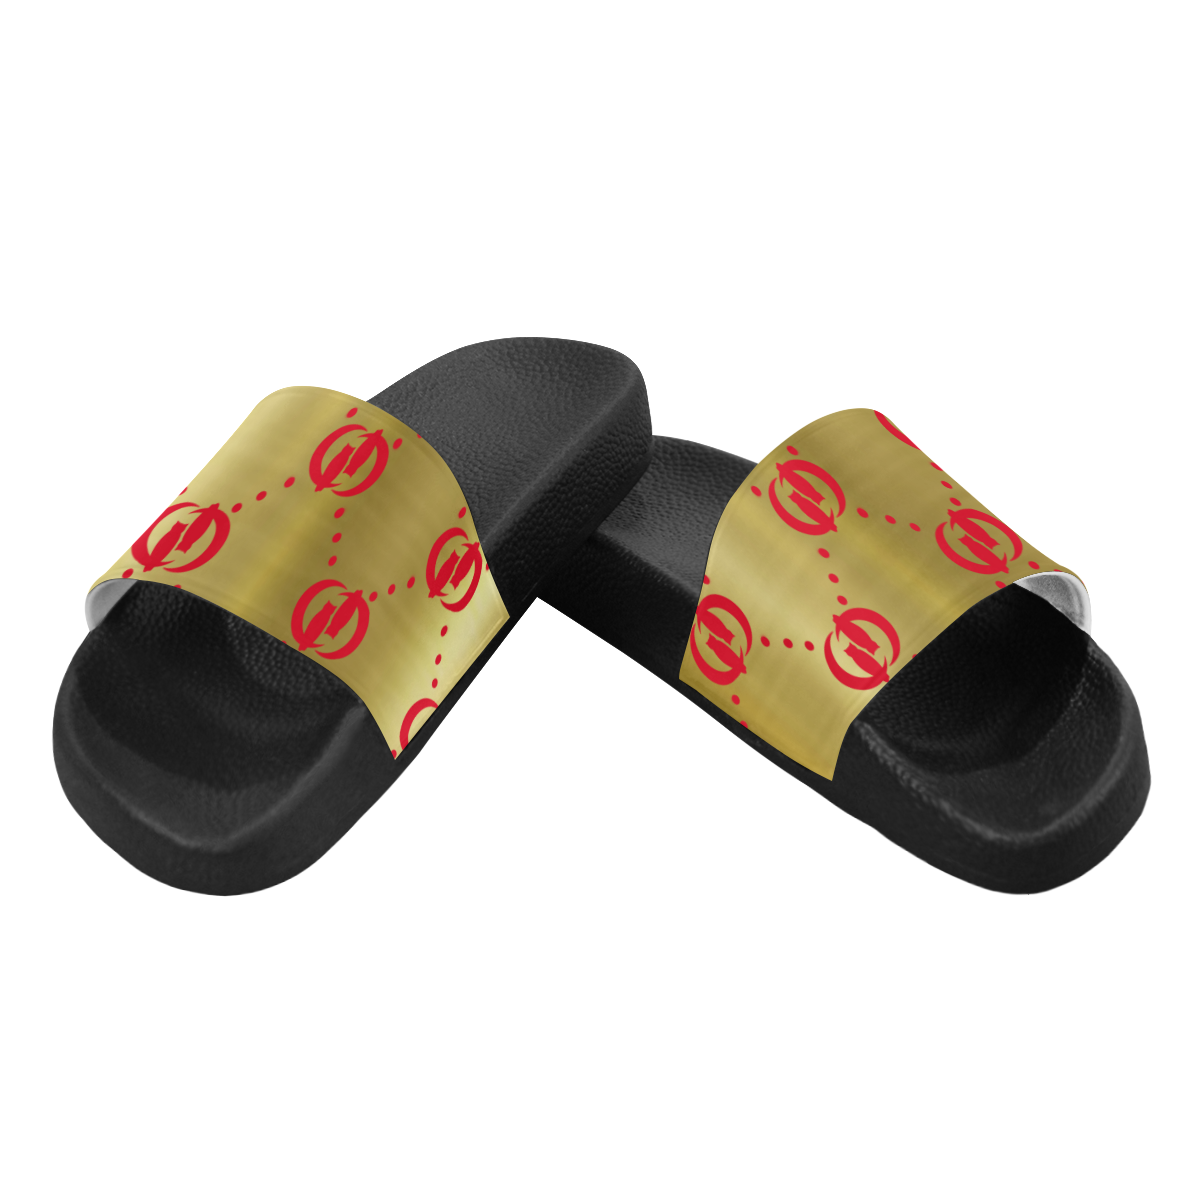 OG LCC RED GOLD Men's Slide Sandals (Model 057)